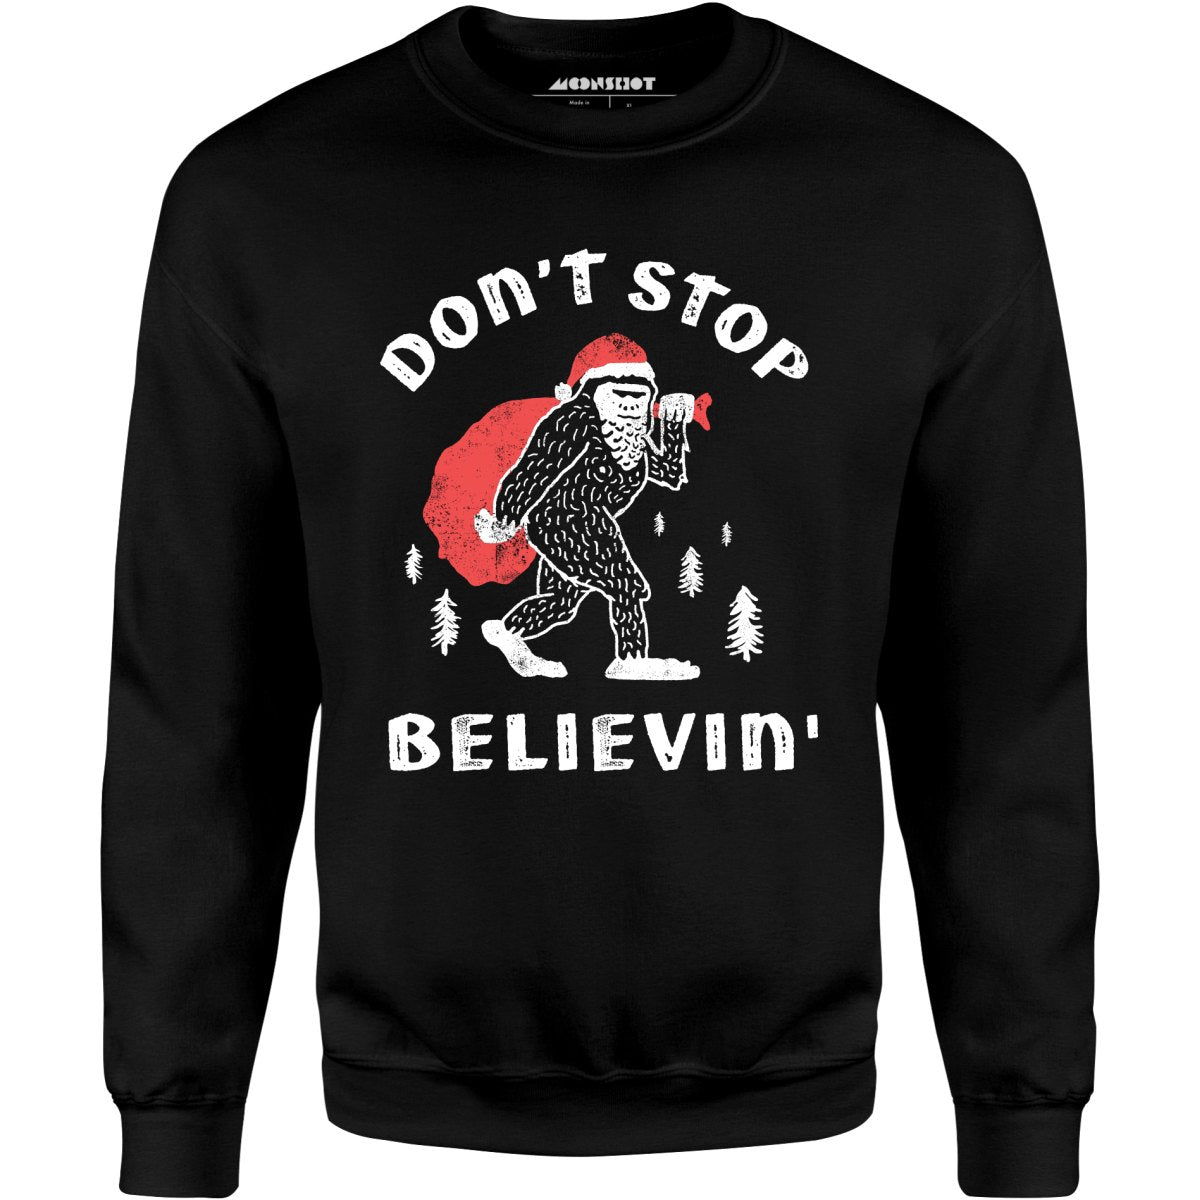 Don't Stop Believin' - Unisex Sweatshirt